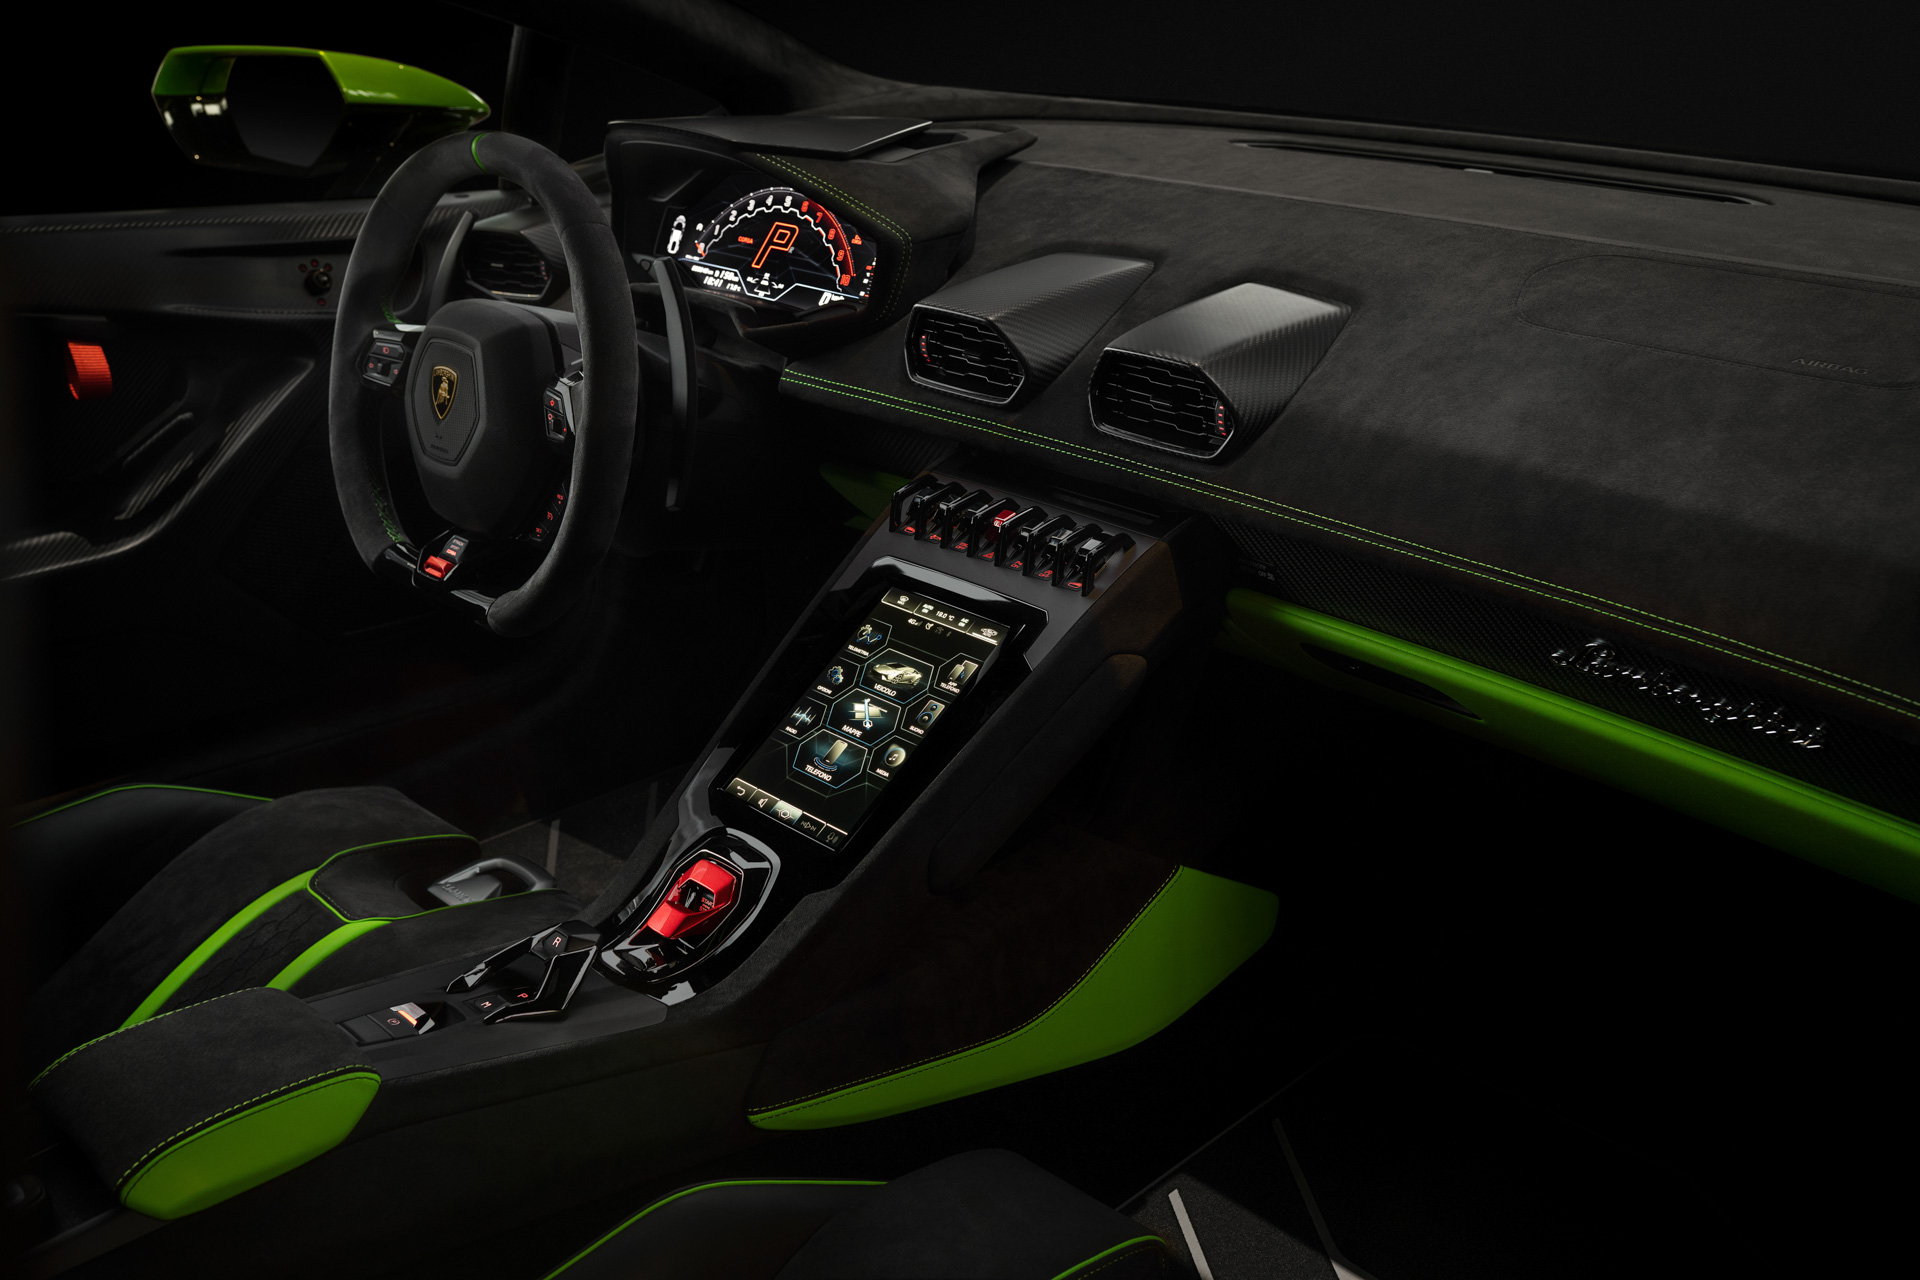 Siêu xe Lamborghini Huracan Tecnica ra mắt với hệ dẫn động cầu sau, mạnh 631 mã lực 2022-lamborghini-huracan-tecnica-00023.jpg